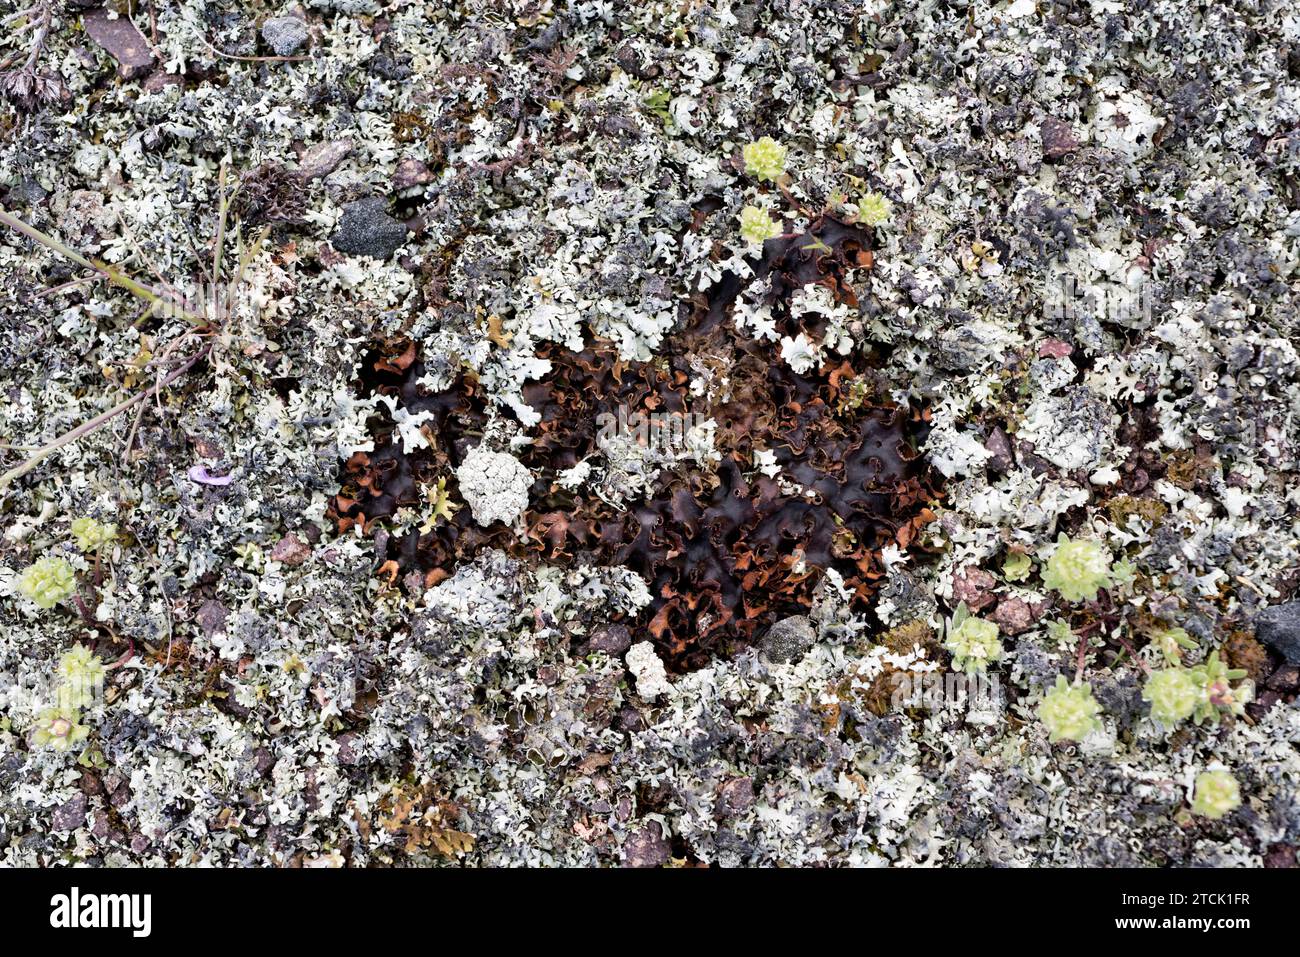 Nephroma laevigatum (centro) e Cladonia foliacea (intorno) due licheni fogliosi terrestri. Questa foto è stata scattata a Canamares, nella provincia di Guadalajara, Foto Stock